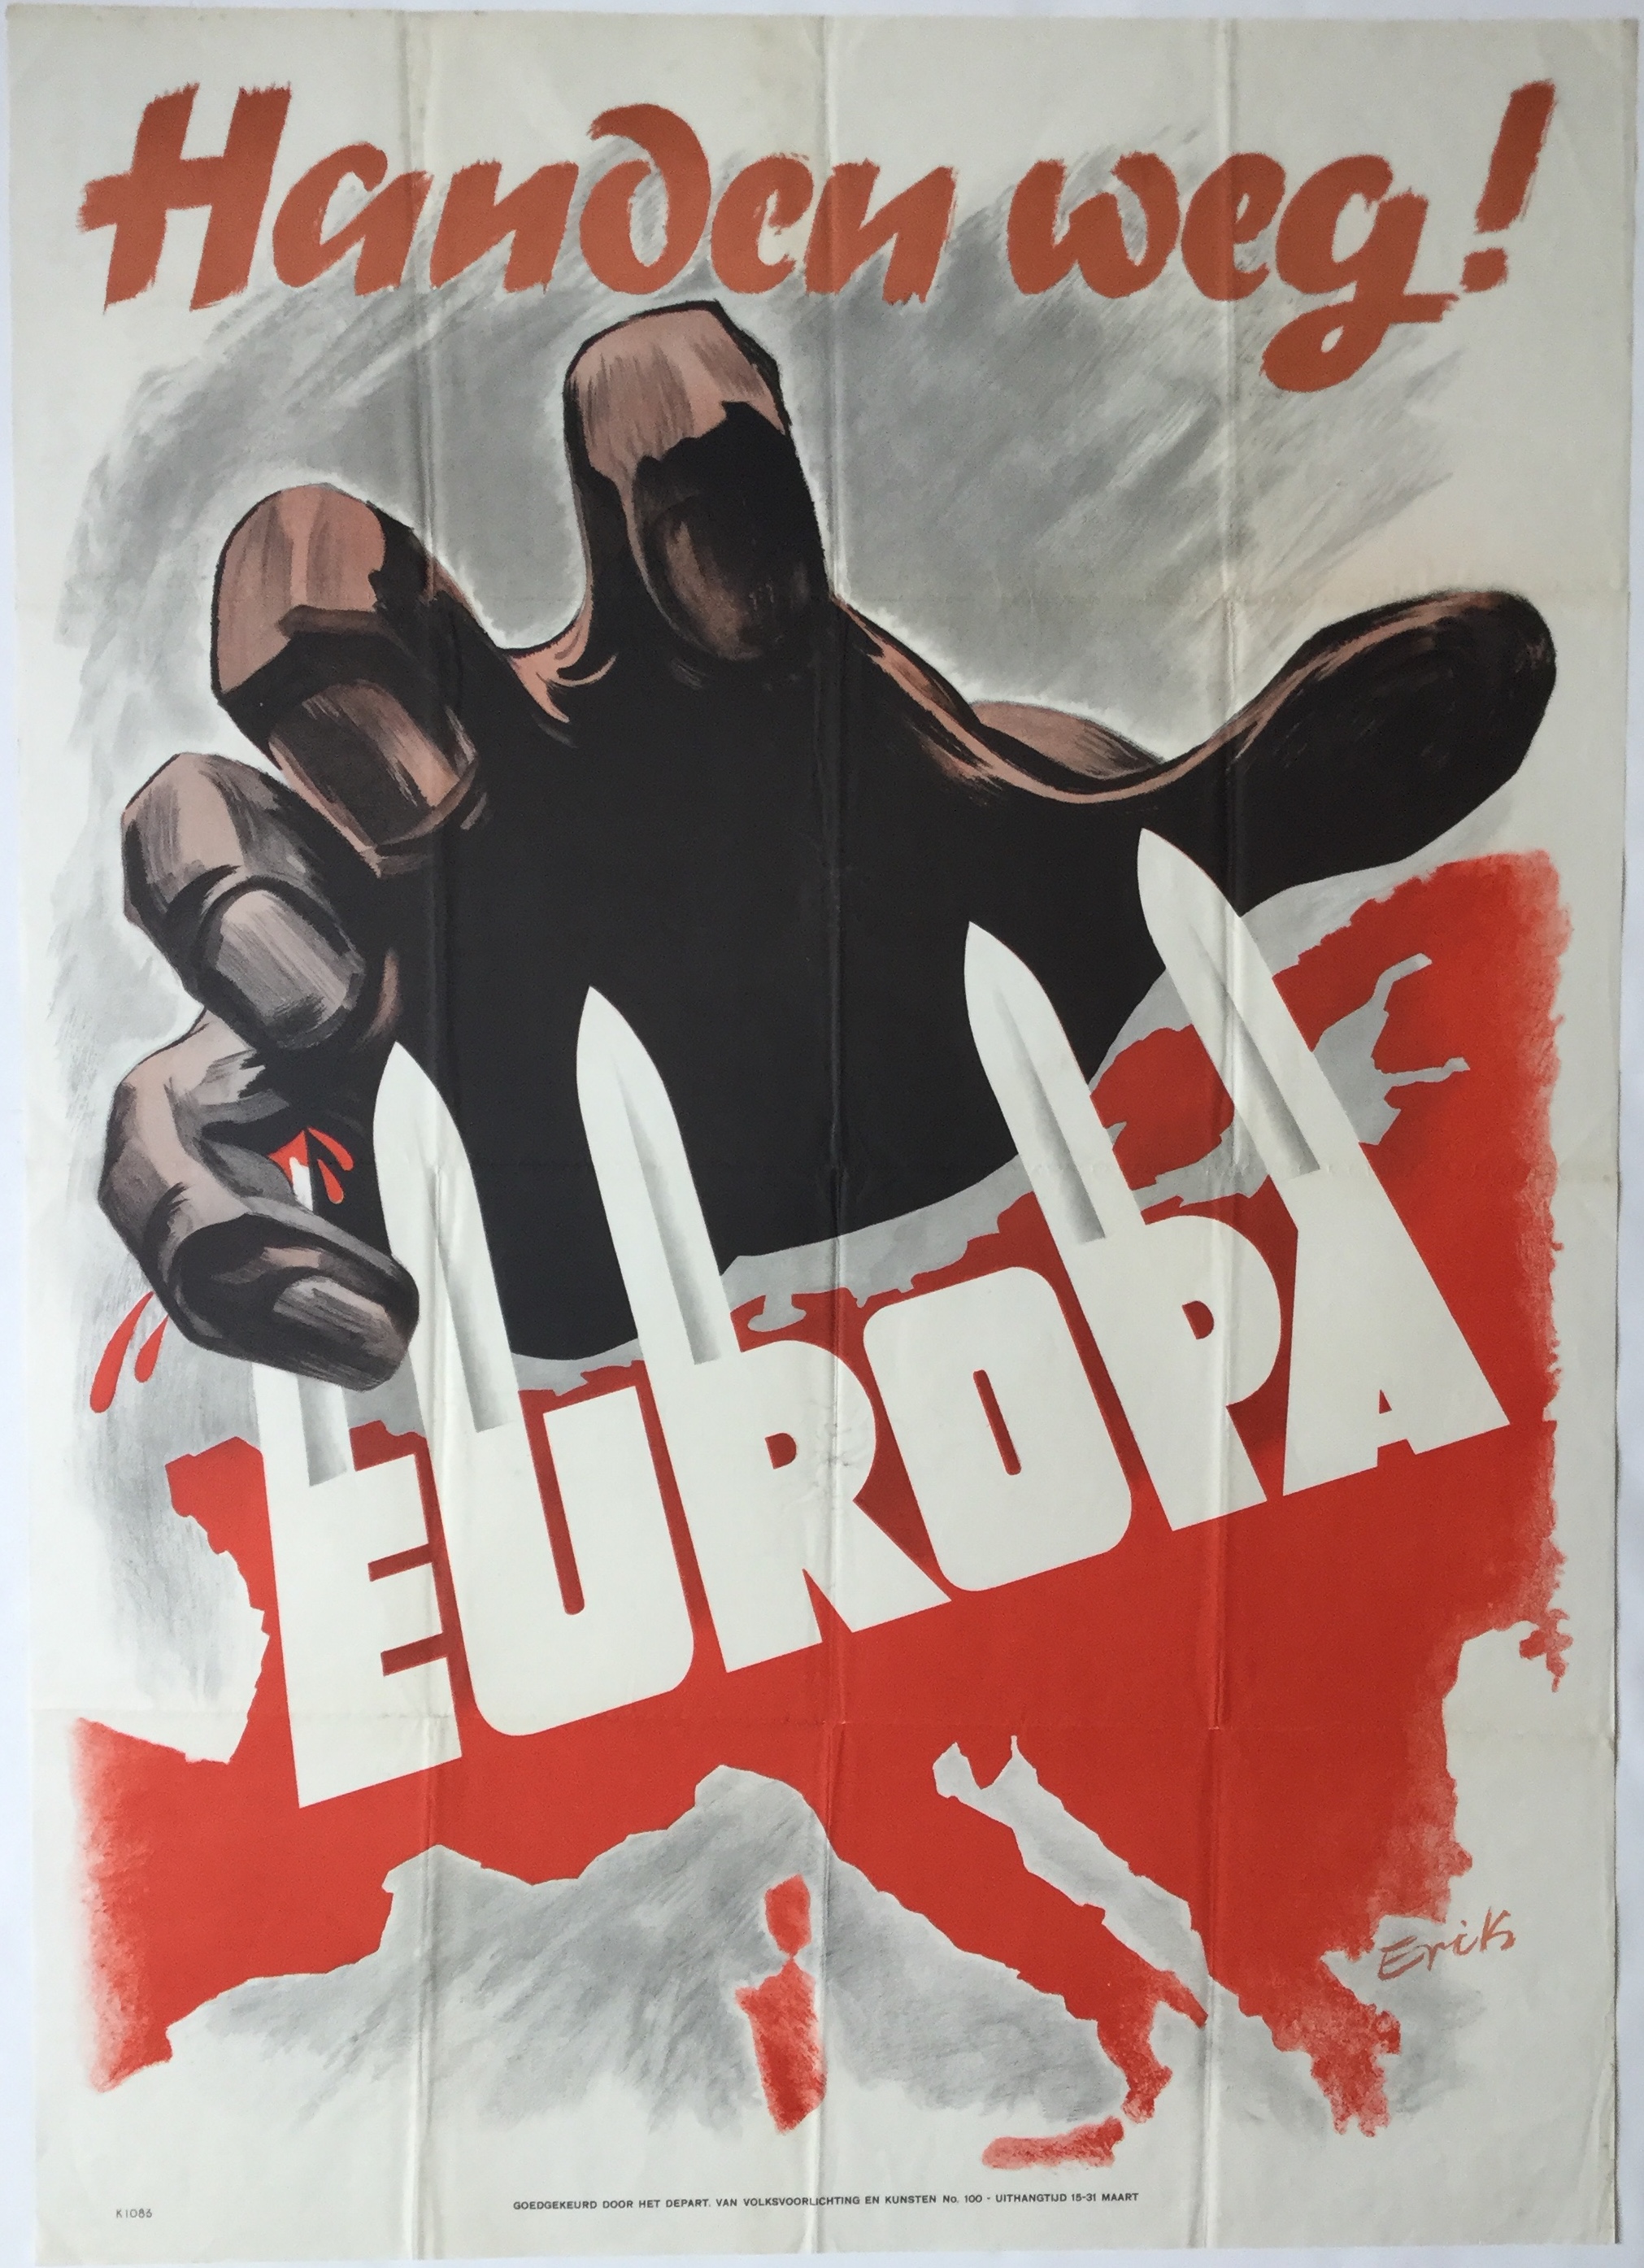 UII077		HANDS OFF EUROPE! [HANDEN WEG!]